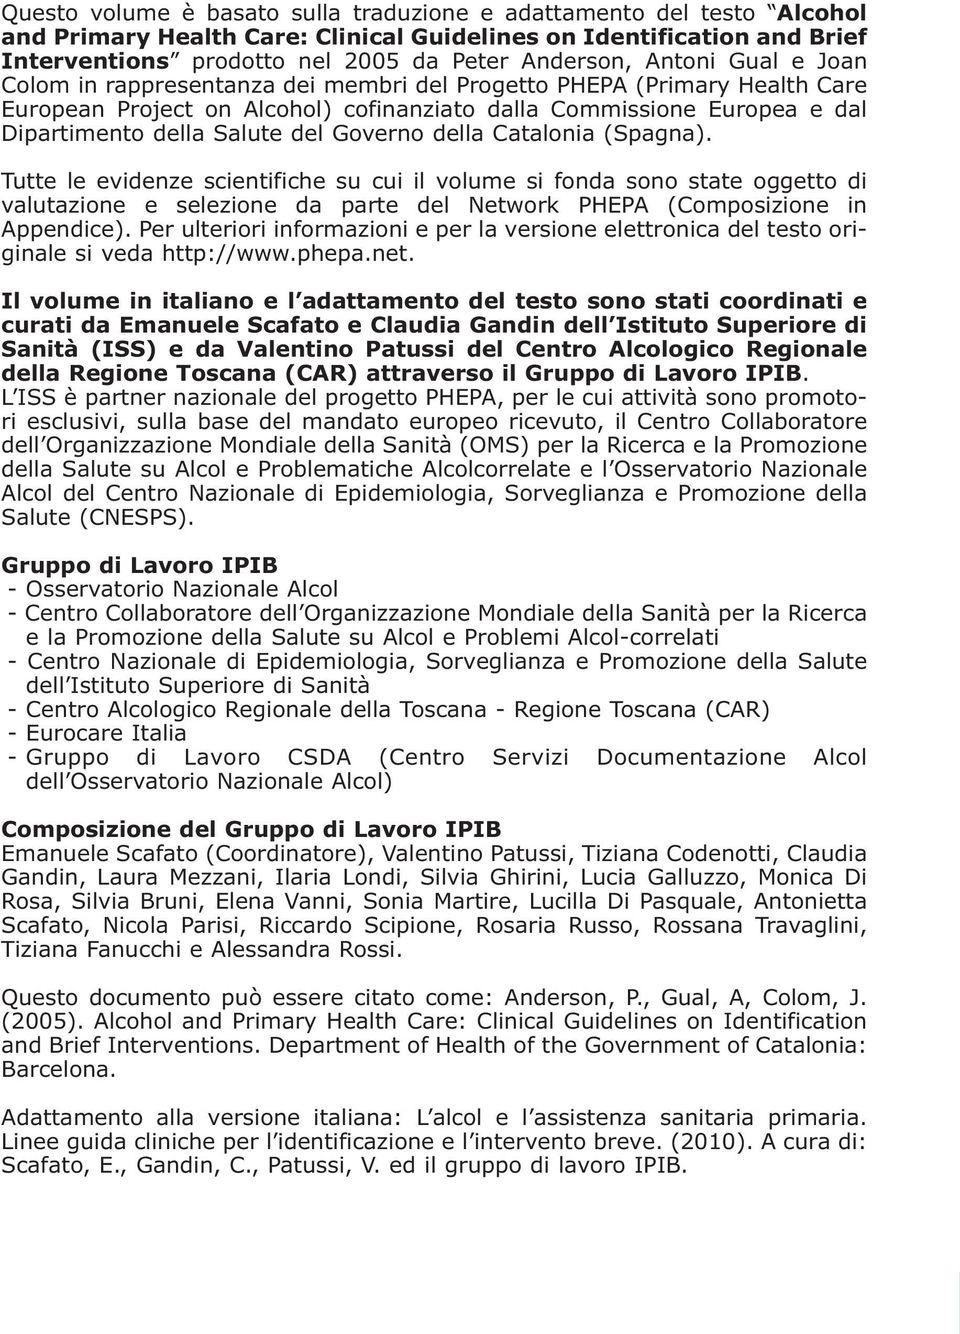 Governo della Catalonia (Spagna). Tutte le evidenze scientifiche su cui il volume si fonda sono state oggetto di valutazione e selezione da parte del Network PHEPA (Composizione in Appendice).